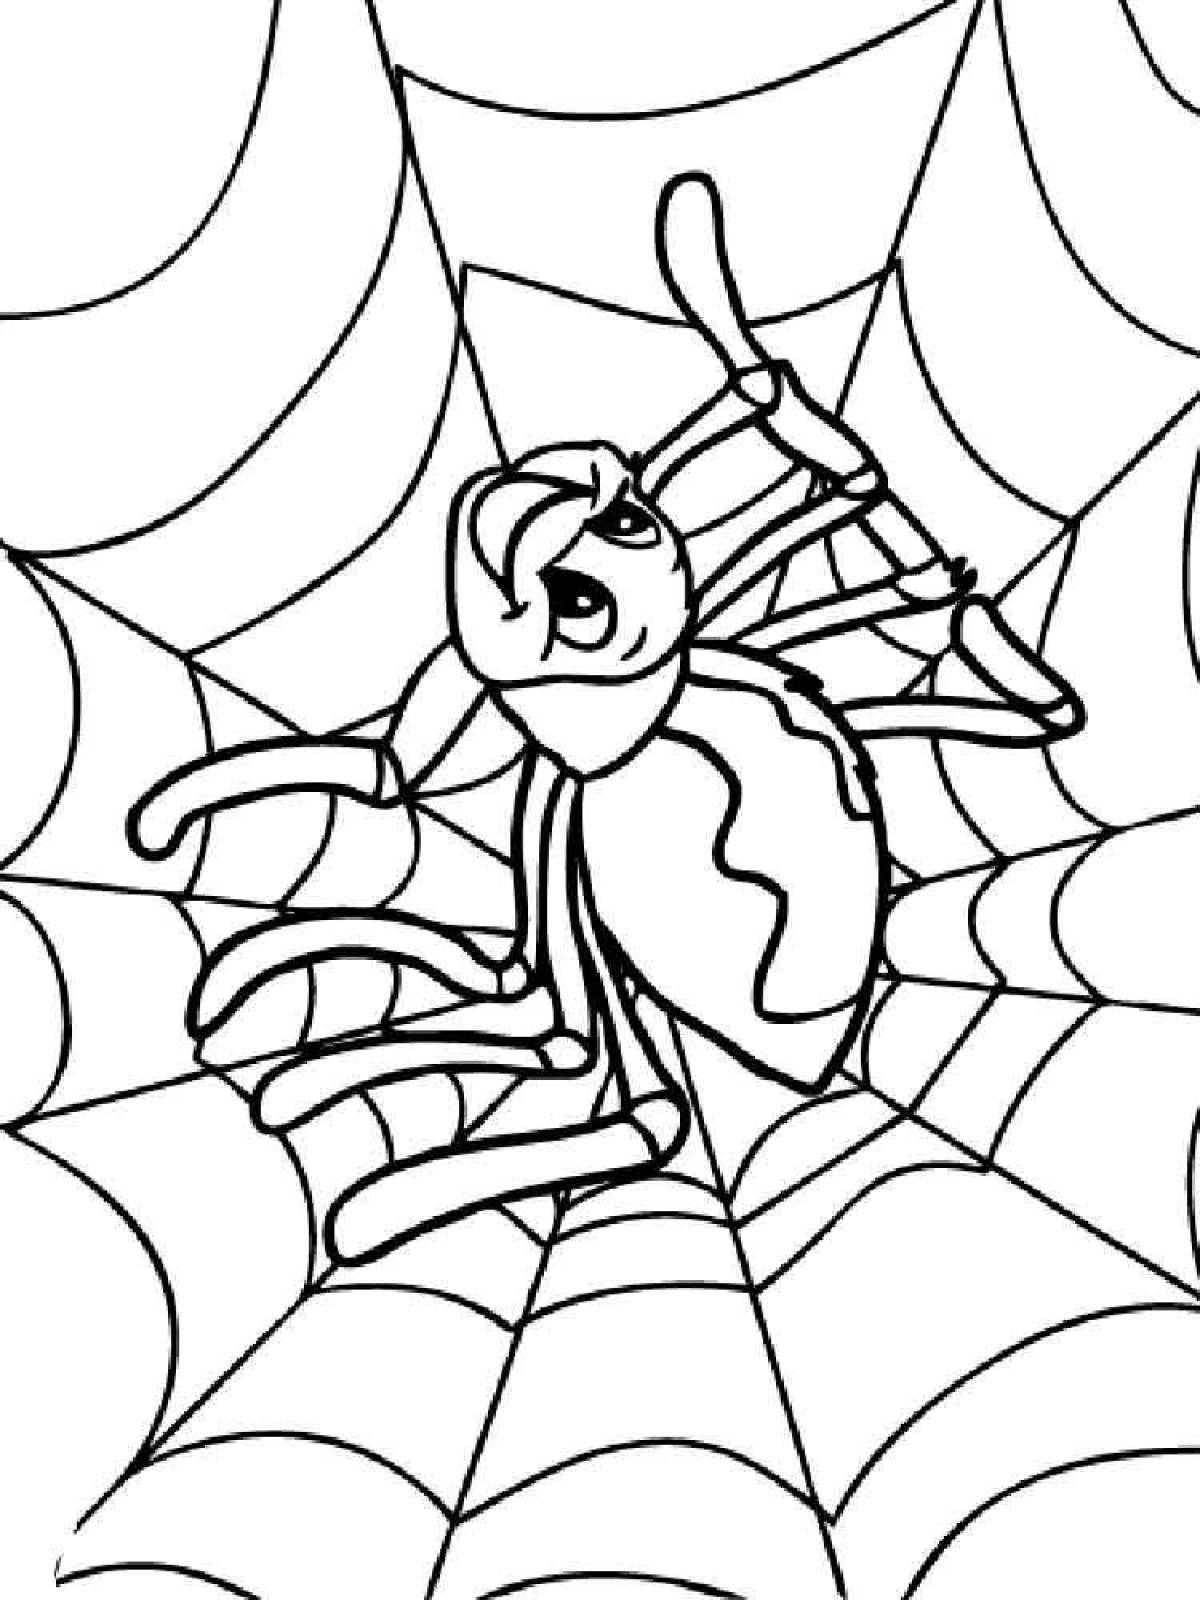 Бабочка муравей паук. Муха Цокотуха паук раскраска. Муха-Цокотуха раскраска для детей. Муха Цокотуха раскракра. Паучок раскраска для детей.